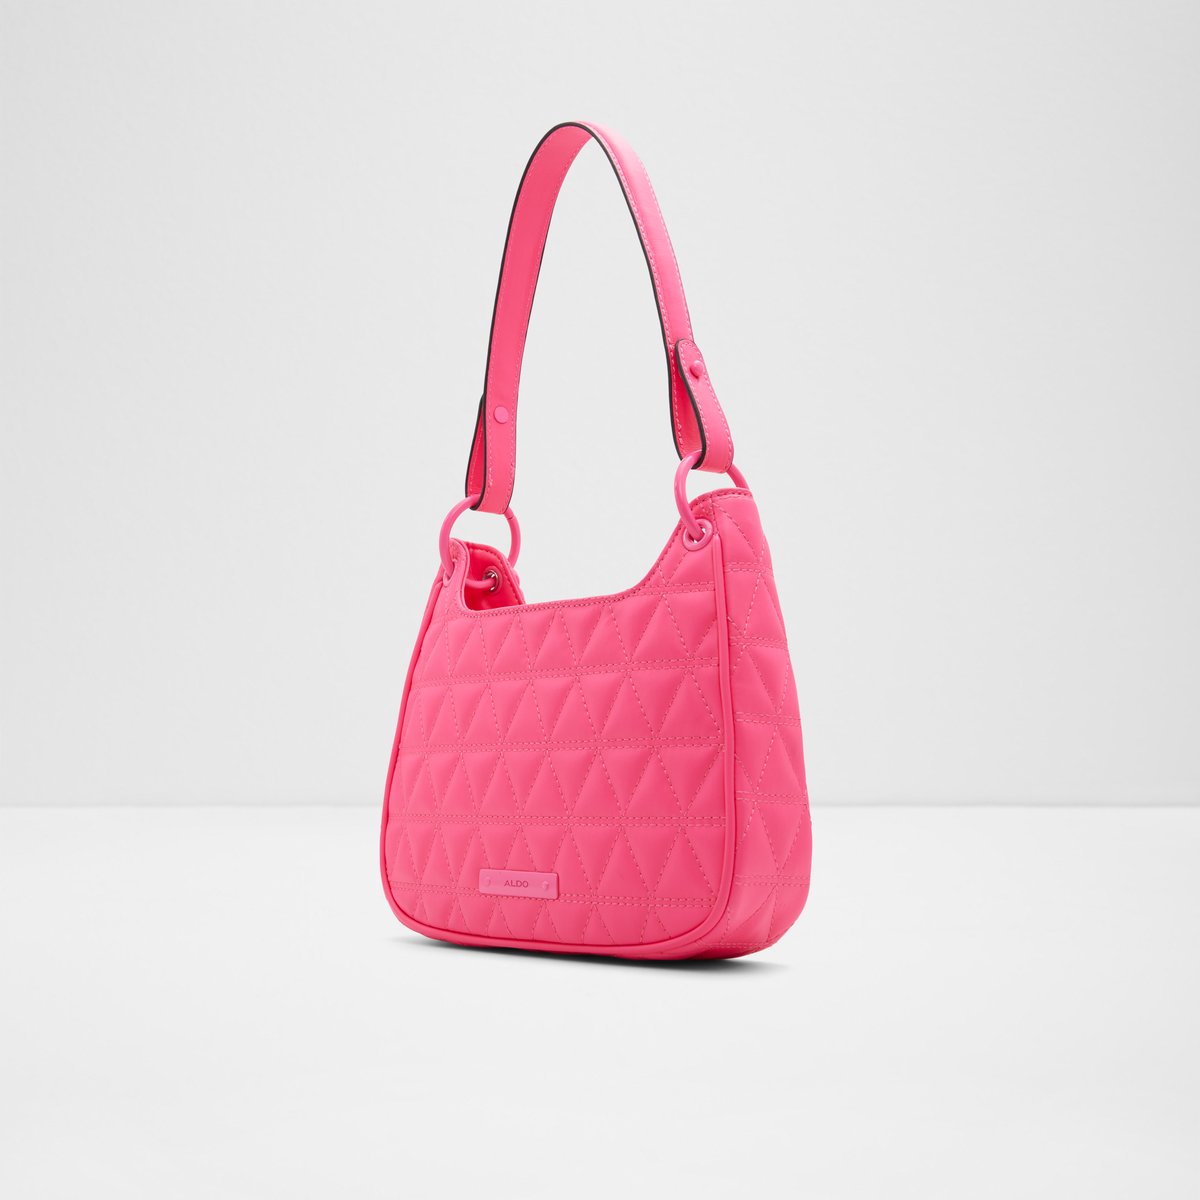 Aldo Handbag or Cross Body/Shoulder Bag (Pink Blush) Easter